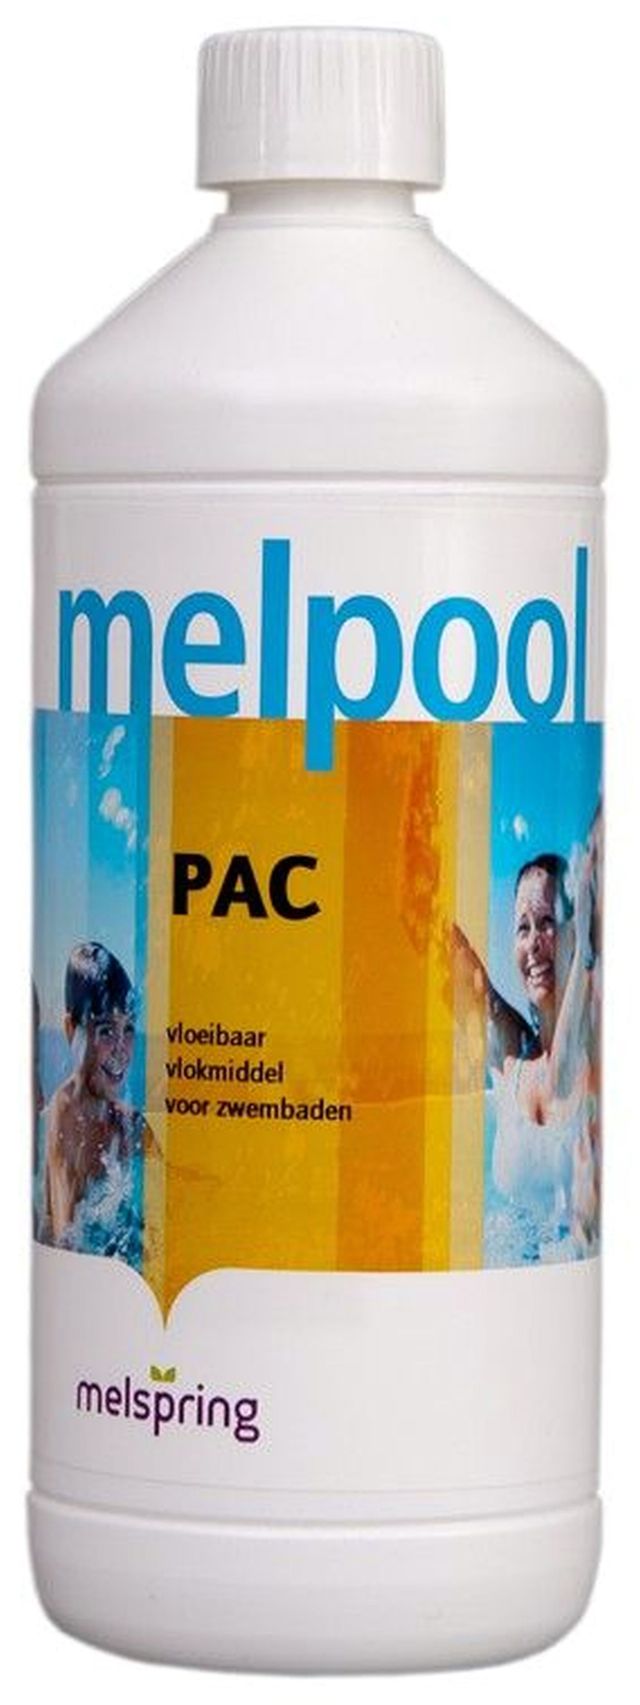 Melpool PAC - flüssiges Flockungsmittel 1 Liter